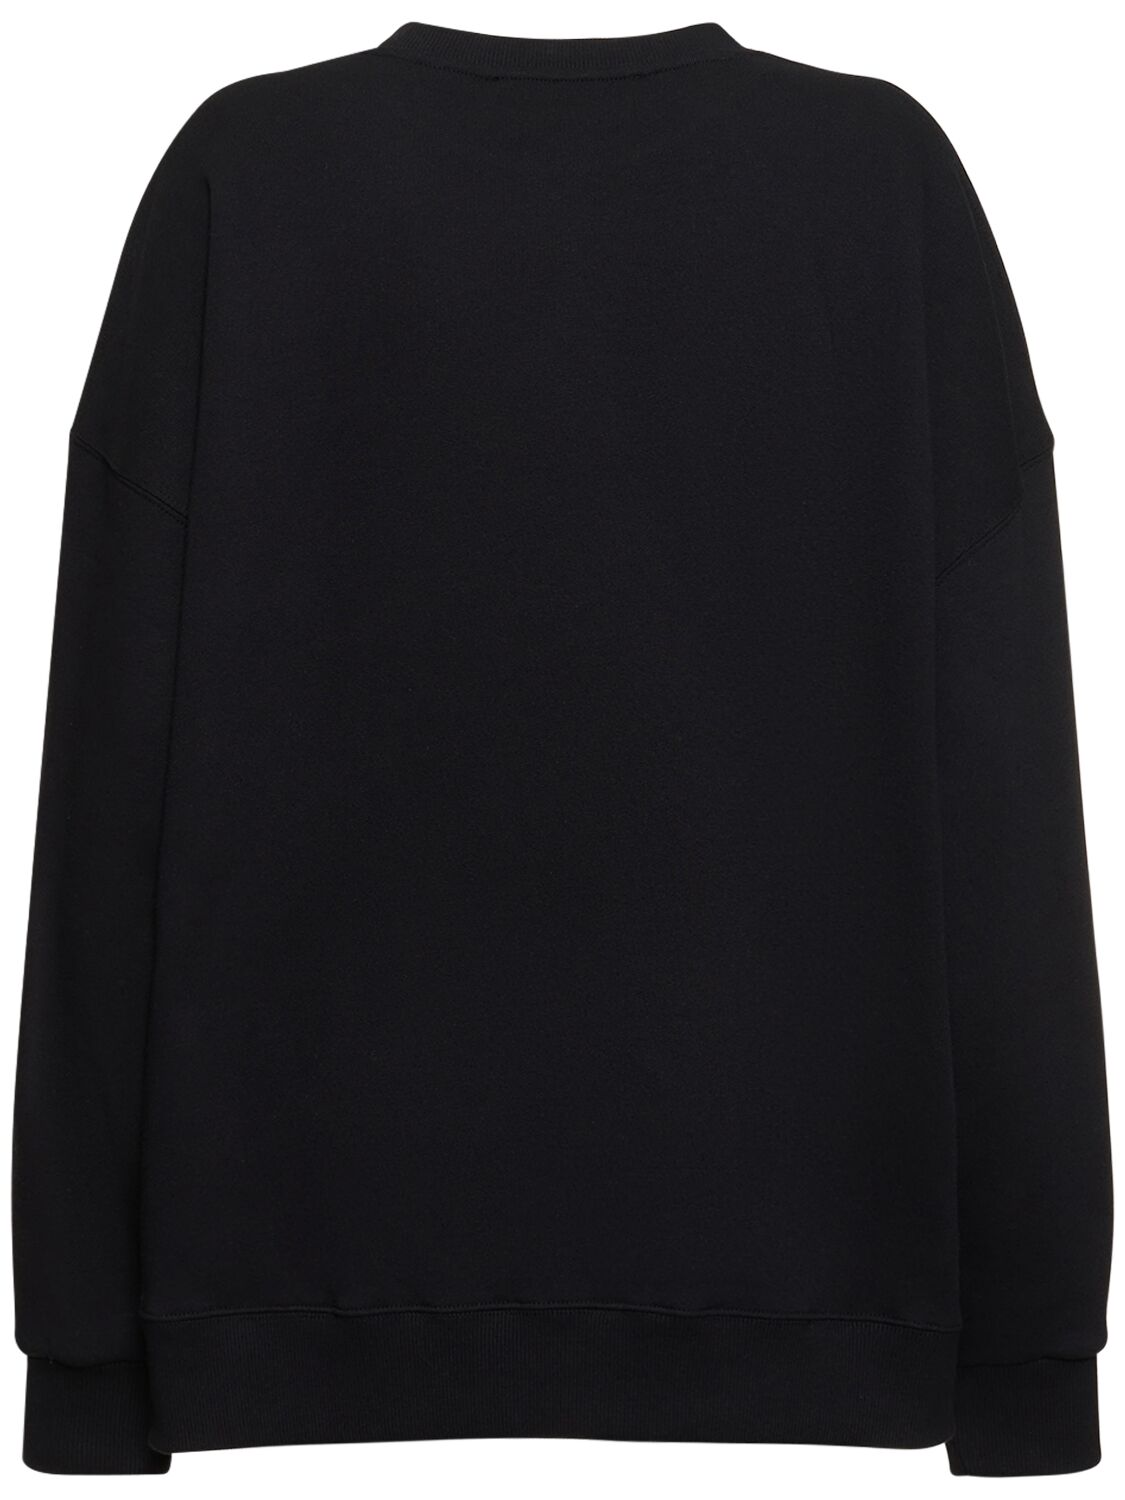 Shop Rotate Birger Christensen Logo Crewneck Cotton Sweatshirt In Black